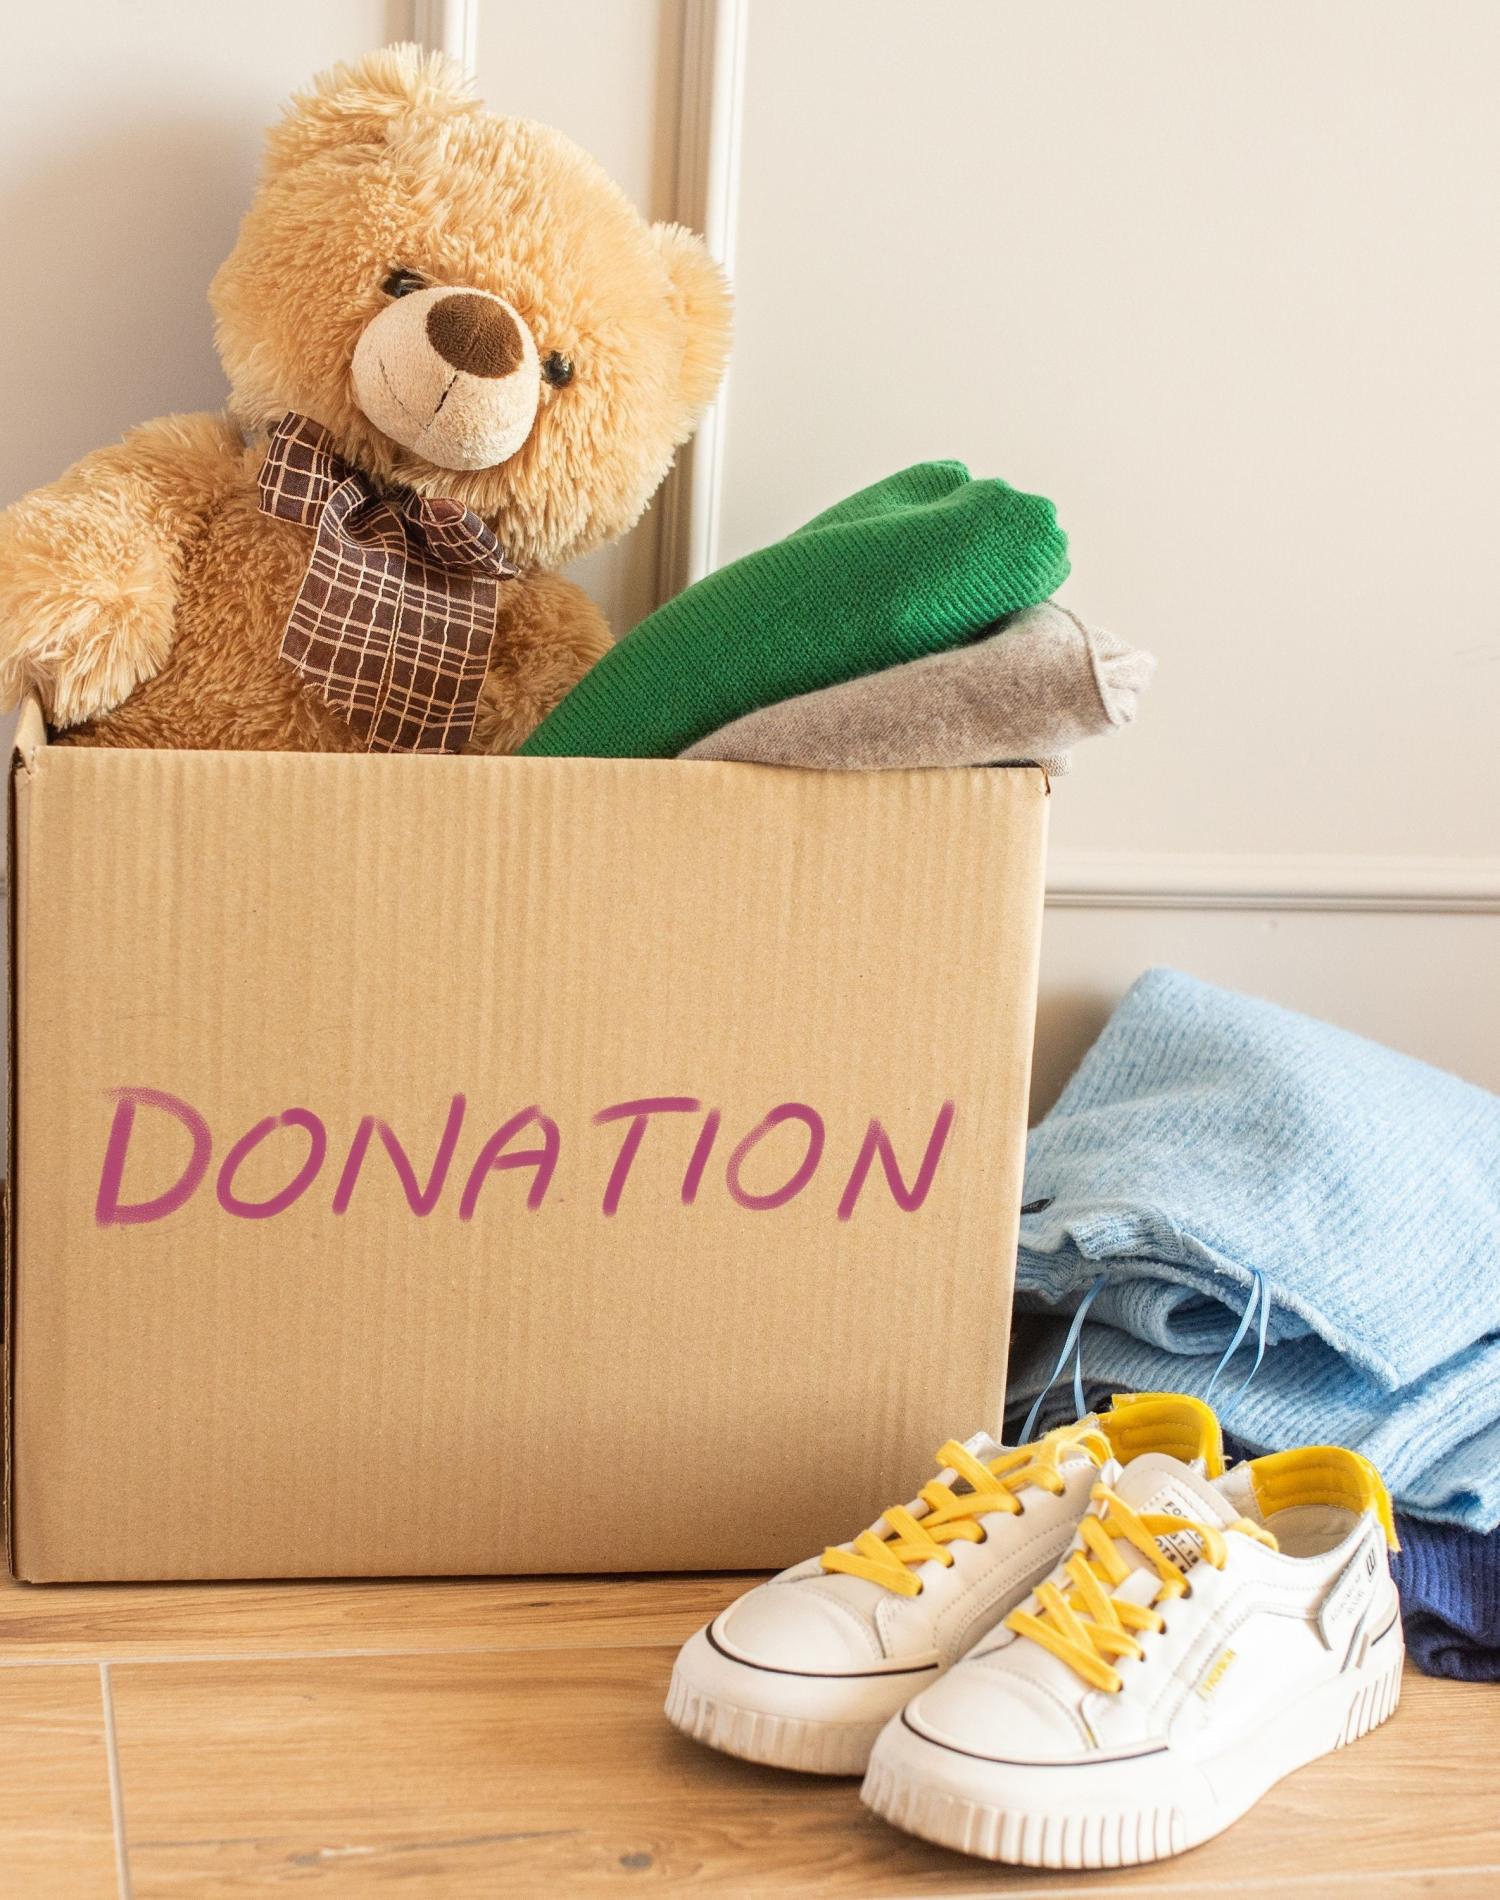 Donation items-shoes, clothes, etc